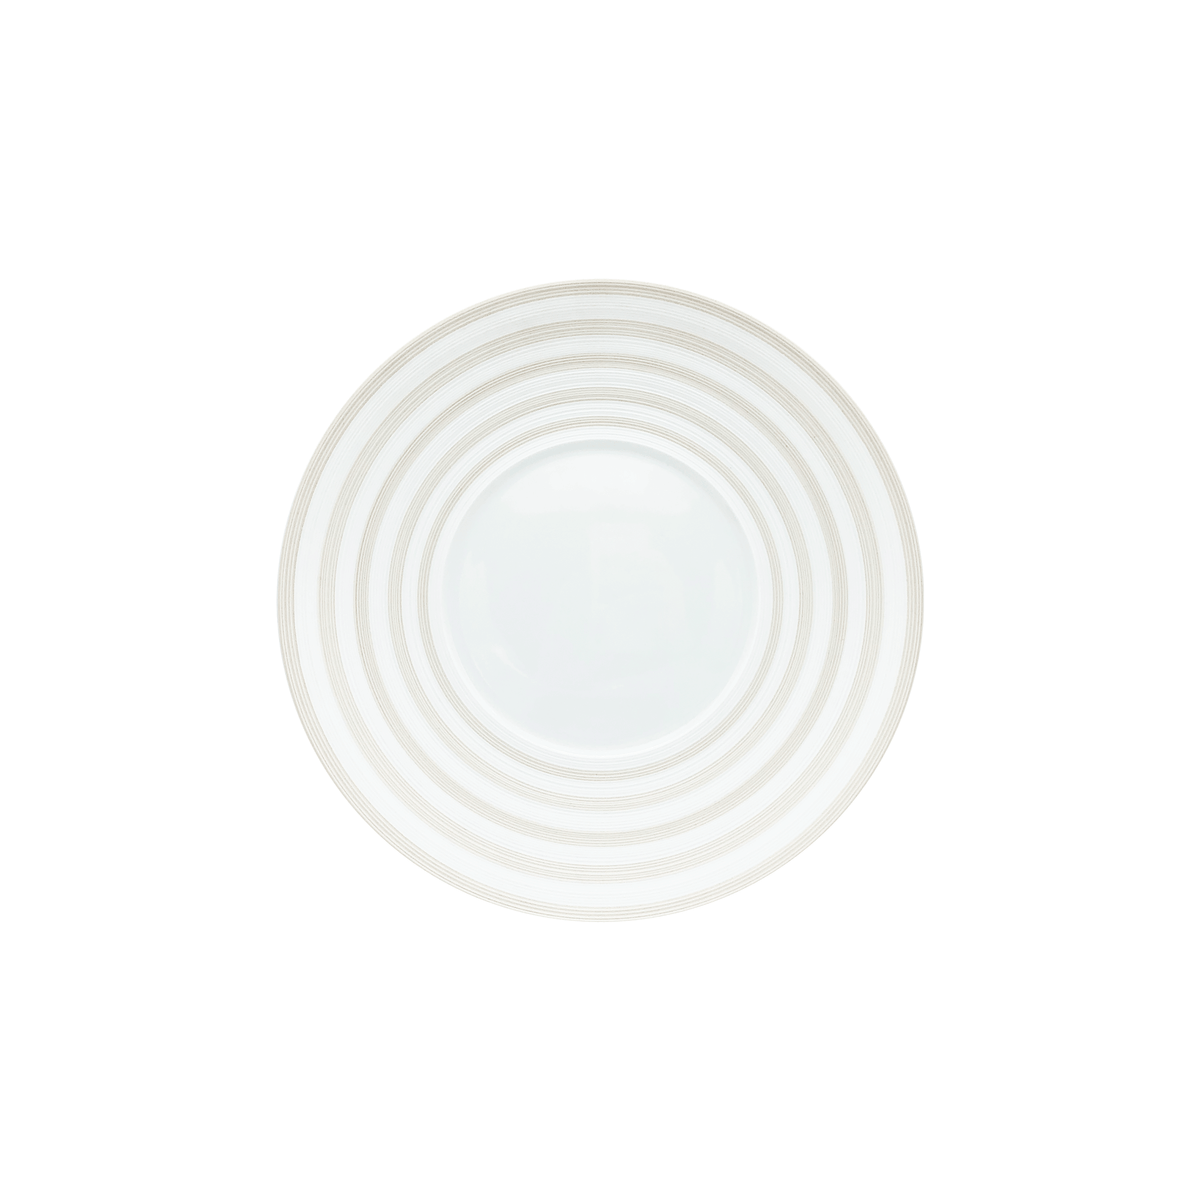 HEMISPHERE - Dessert plate